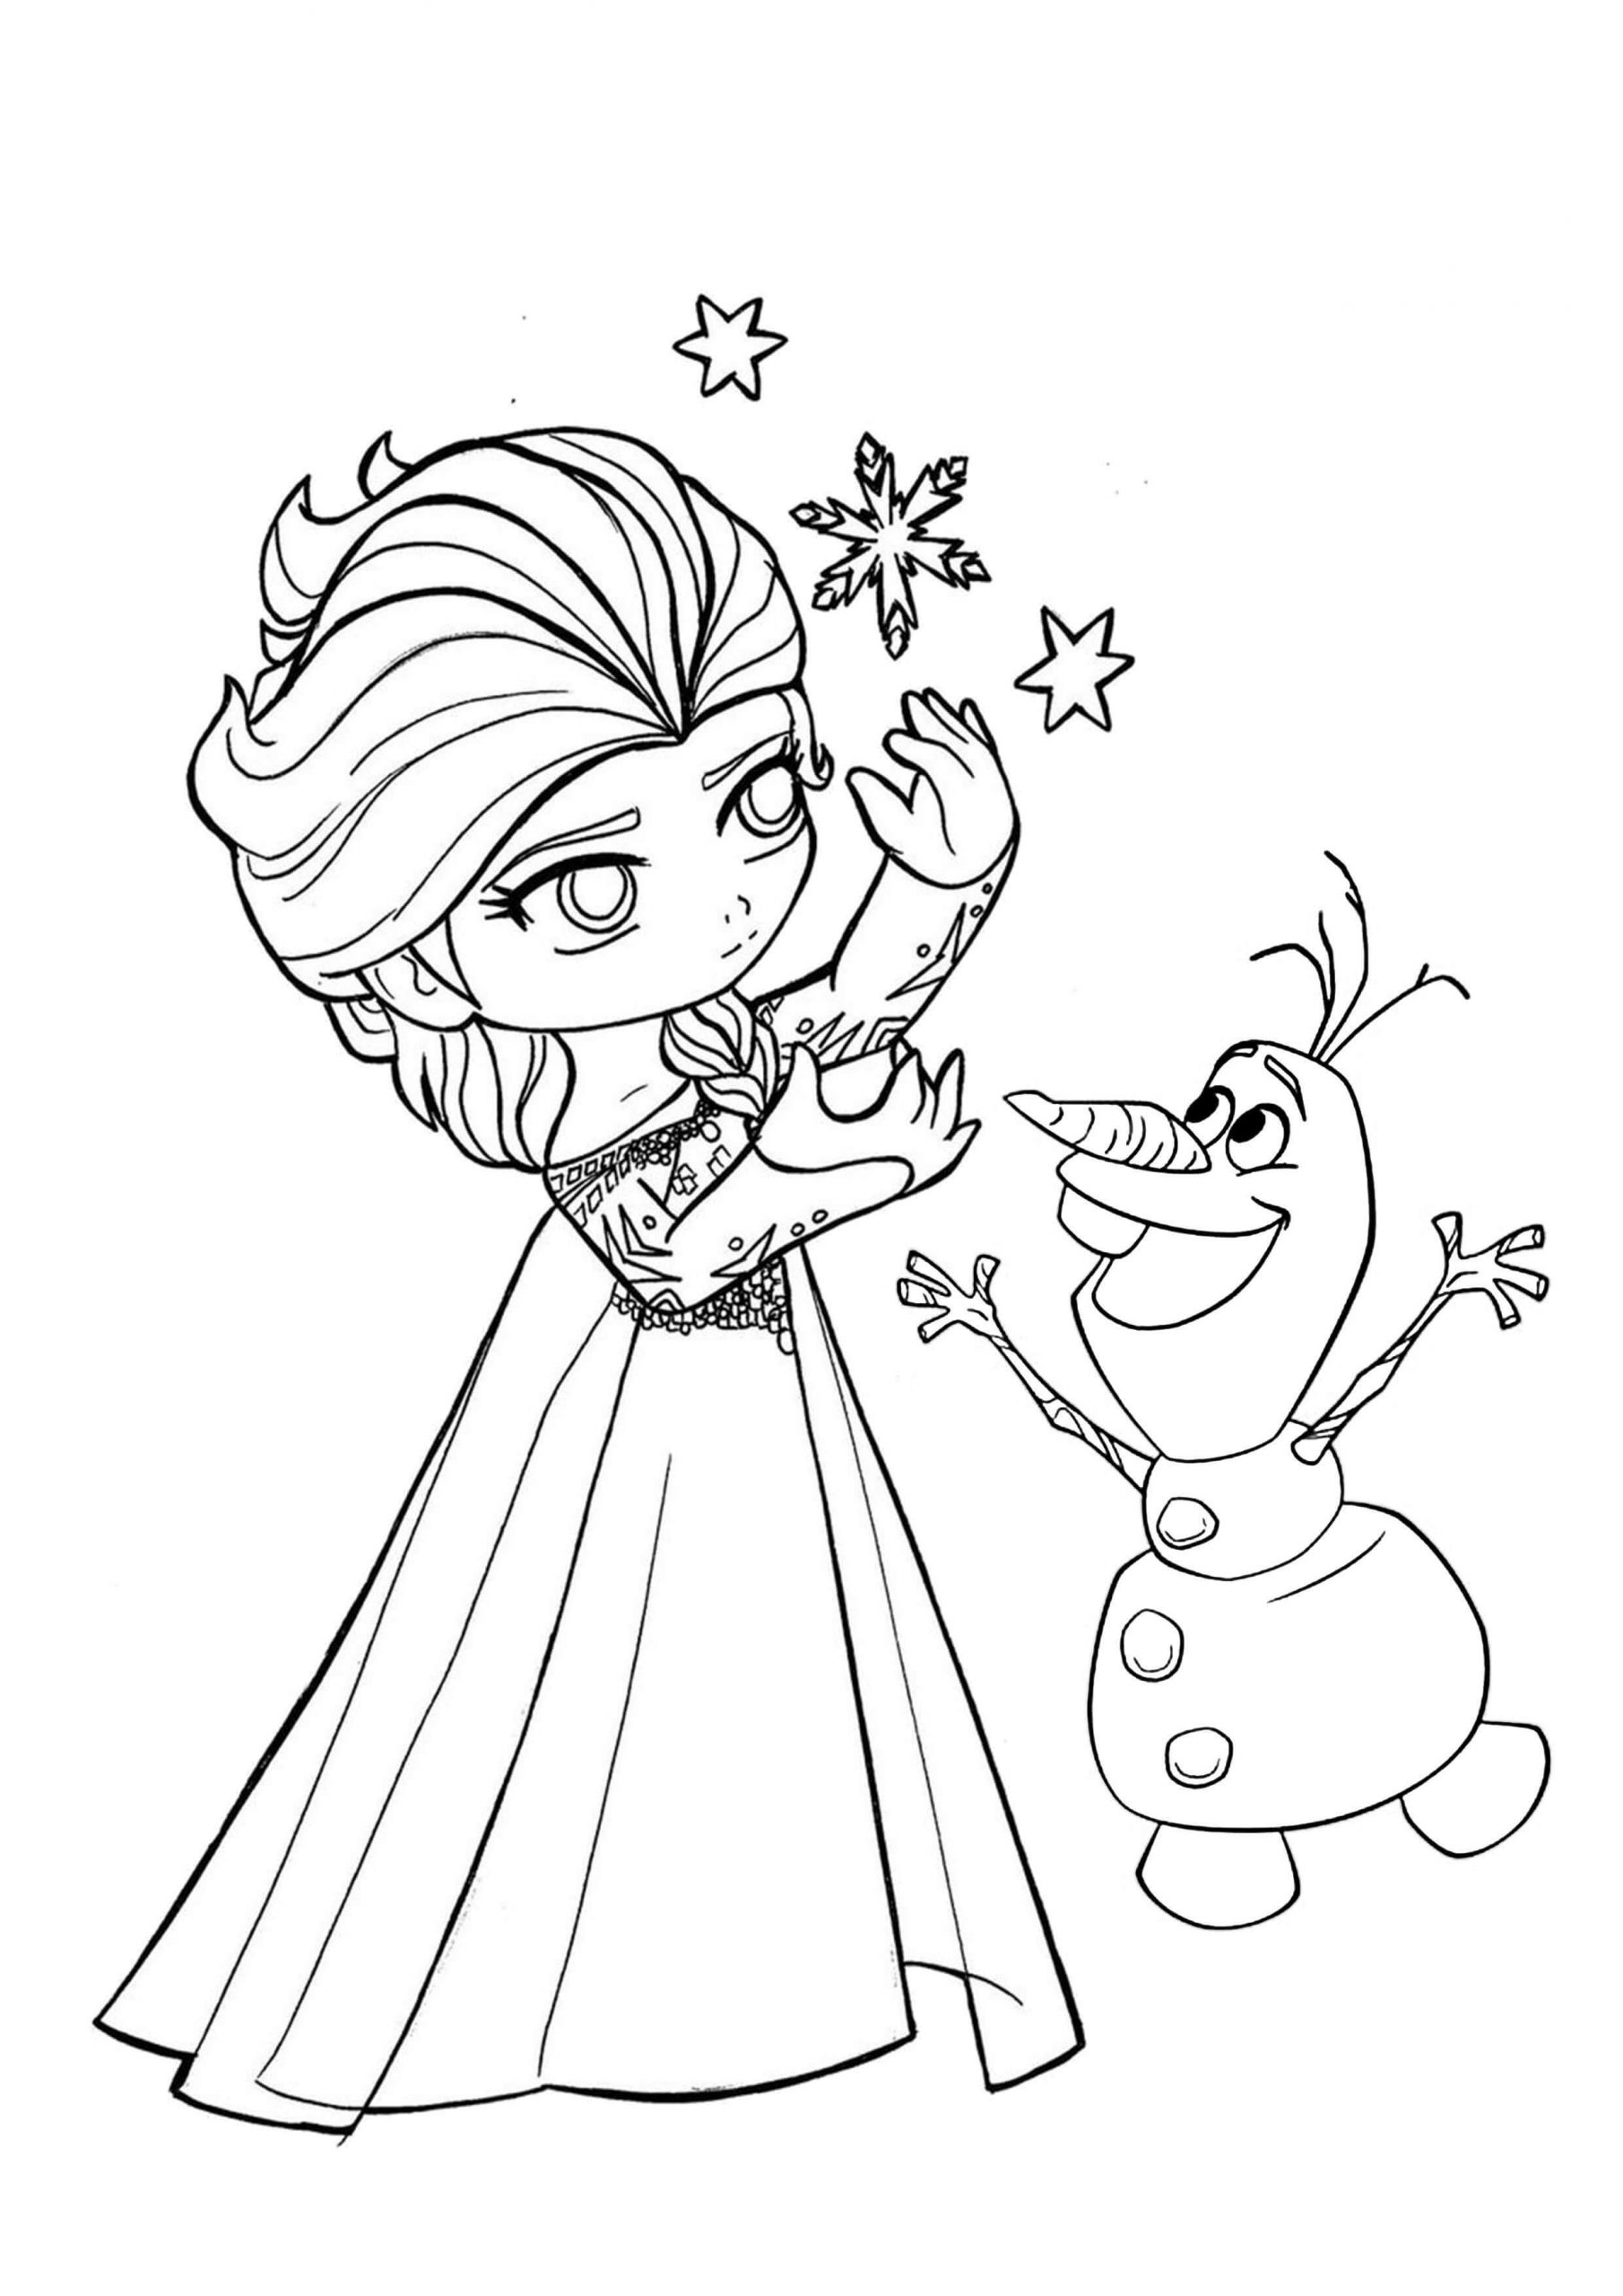 Målarbild Prinsessan Elsa och Olaf